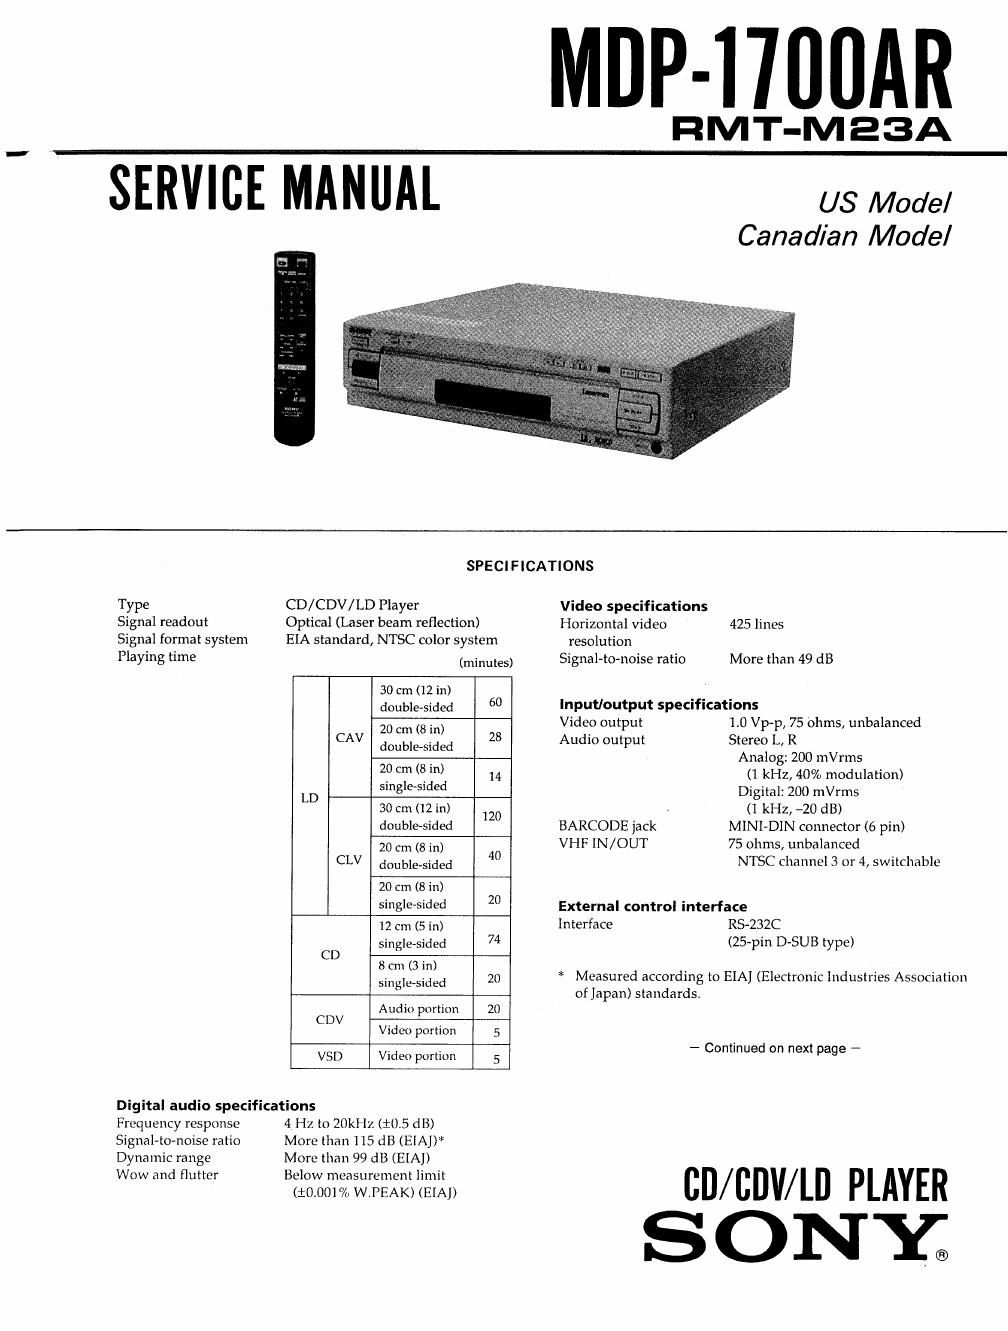 sony mdp 1700 ar service manual